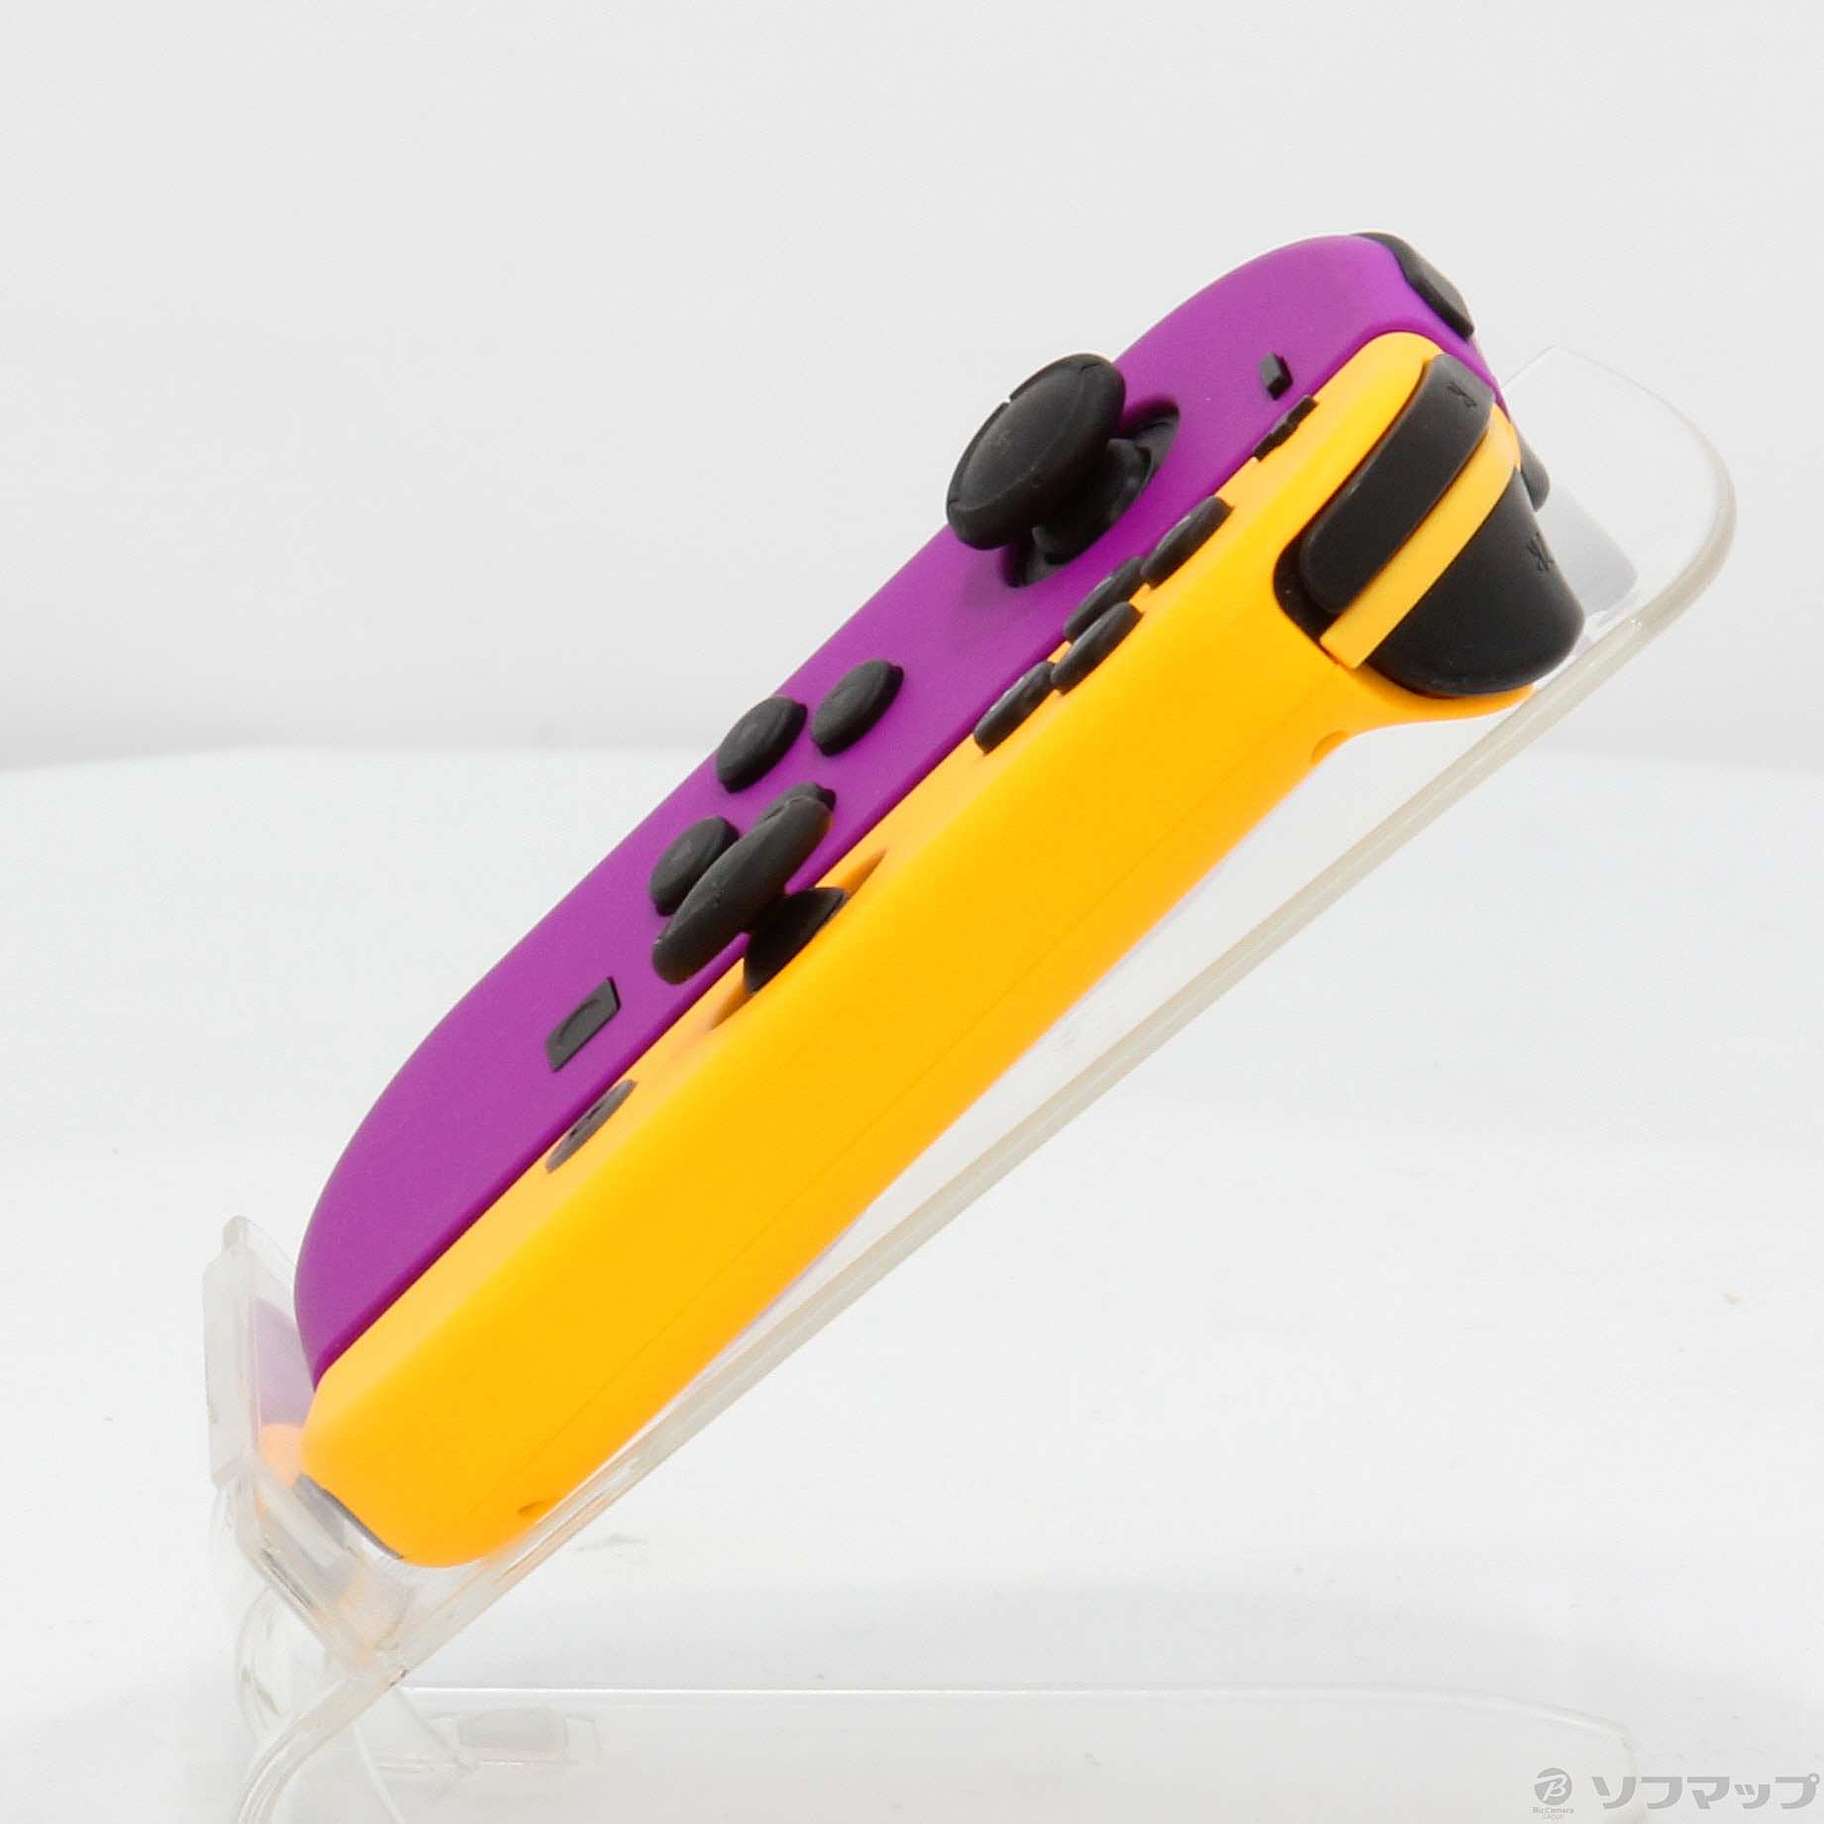 中古】Nintendo Switch Joy-Con (L) ネオンパープル ／ (R) ネオン 